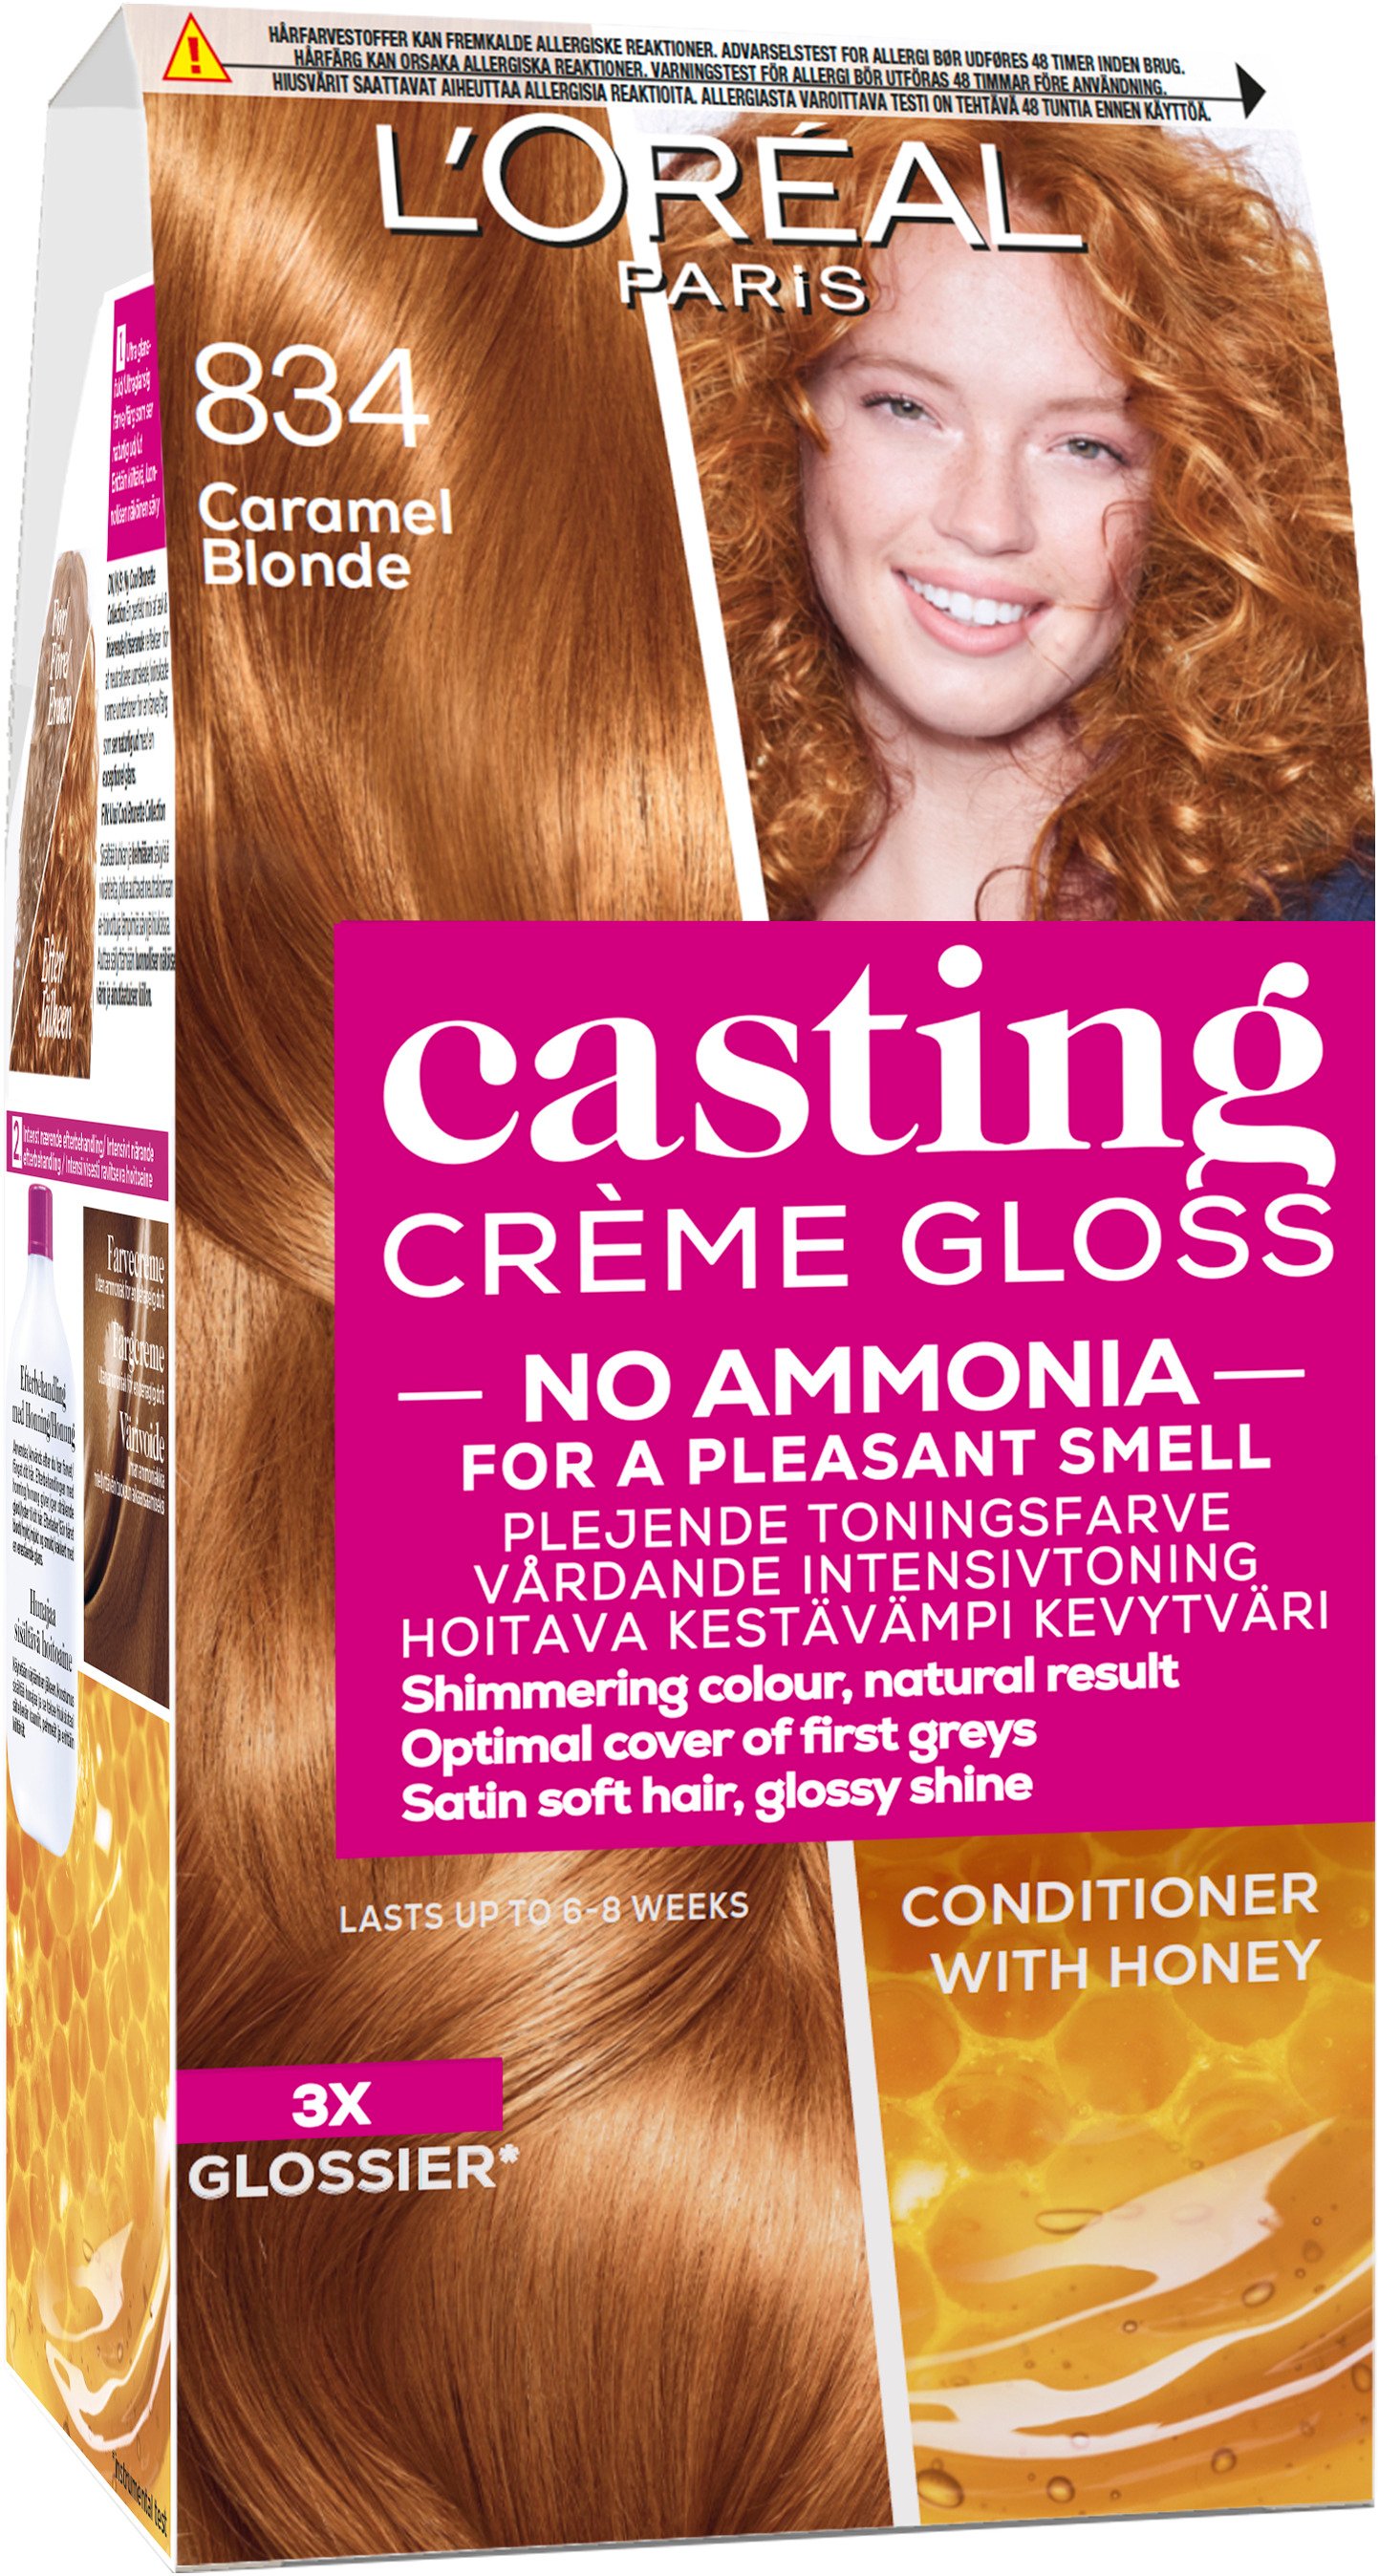 L'Oréal Paris Casting Creme Gloss 834 Caramel Blonde